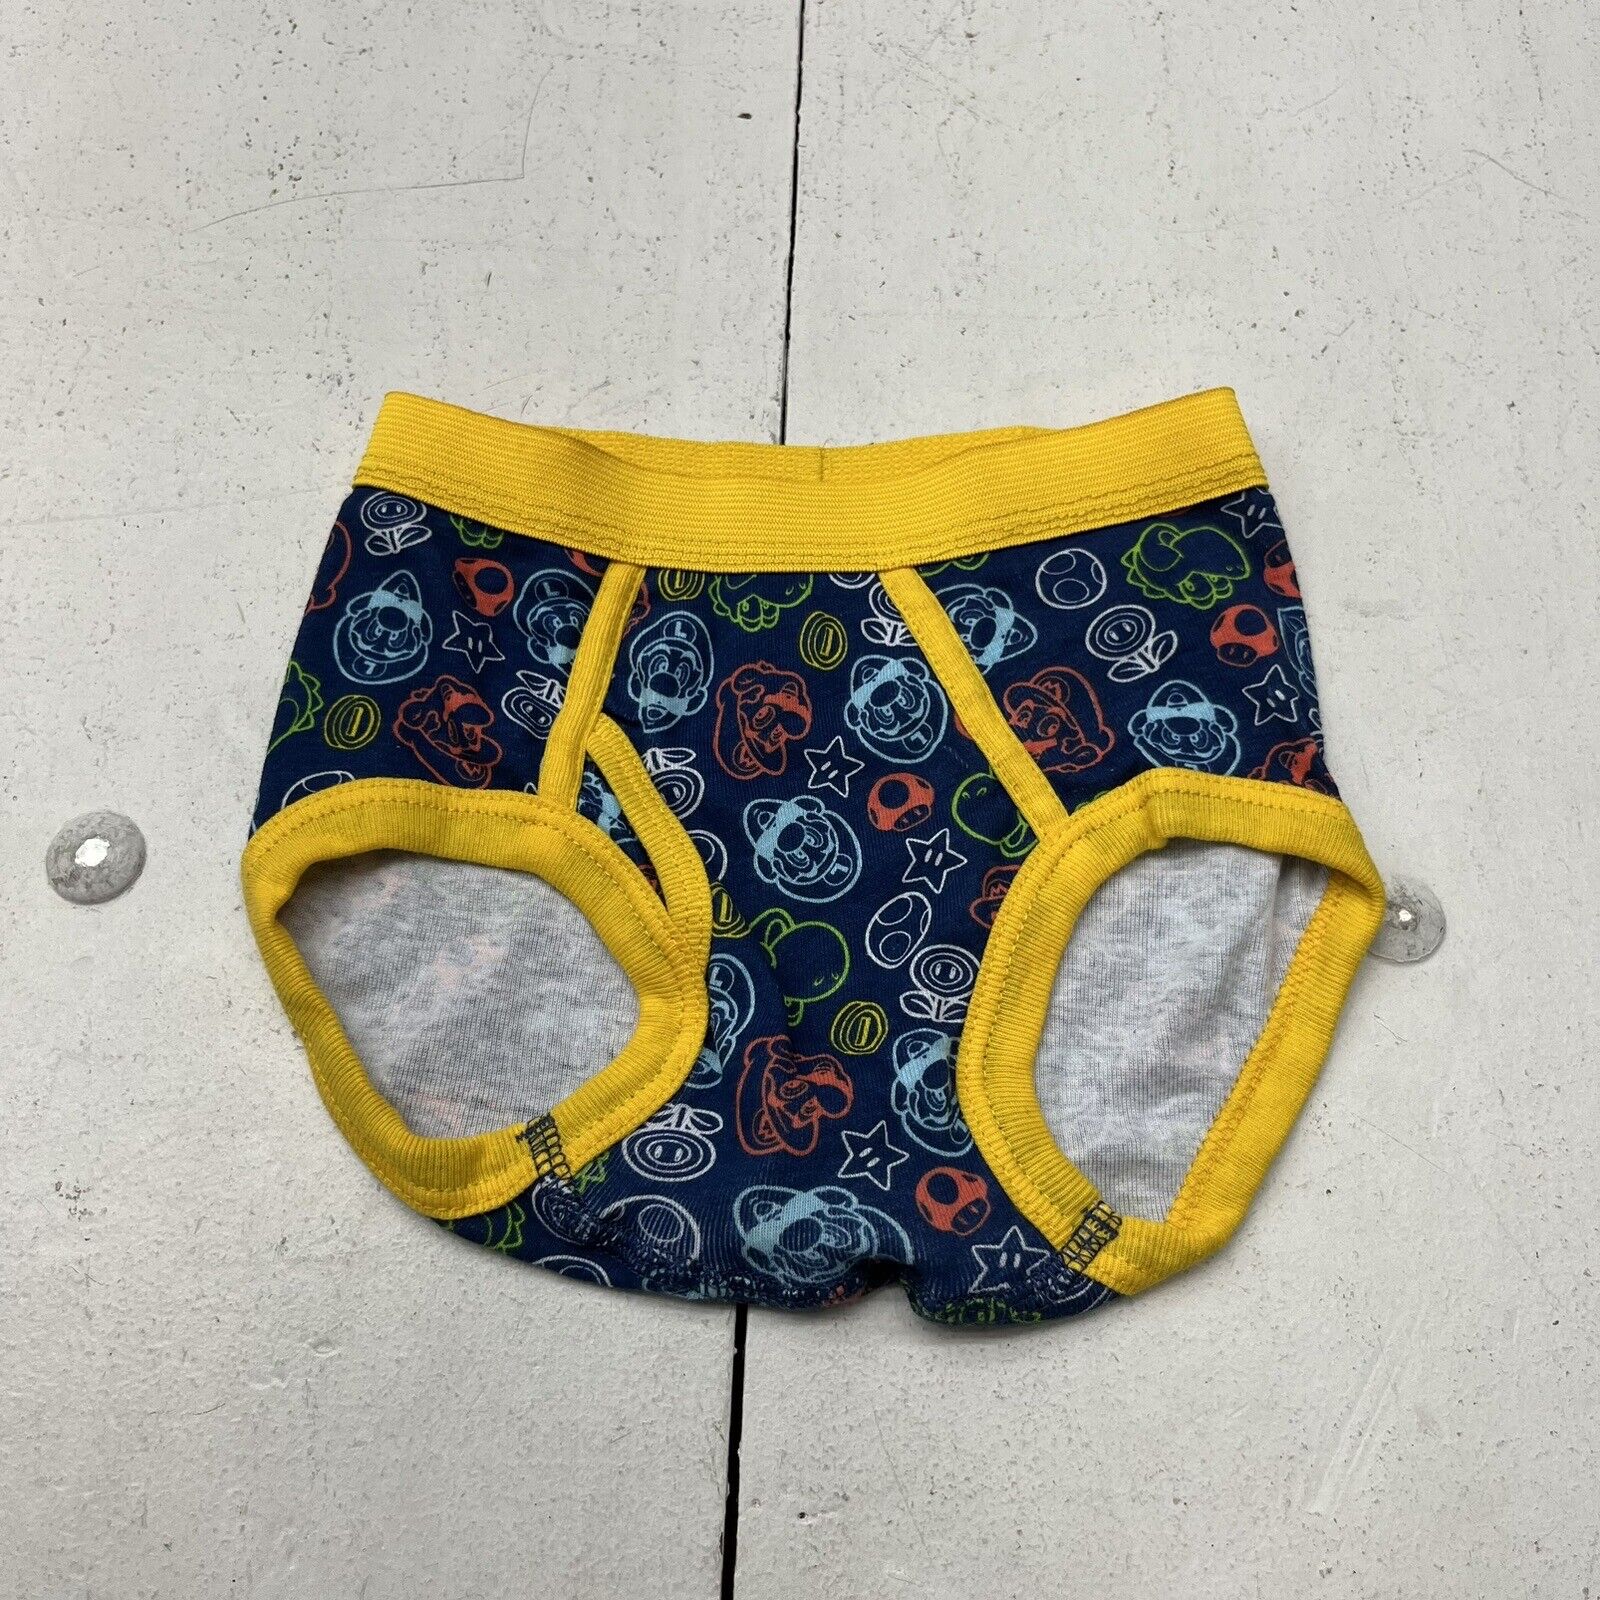 Mario Underwear 